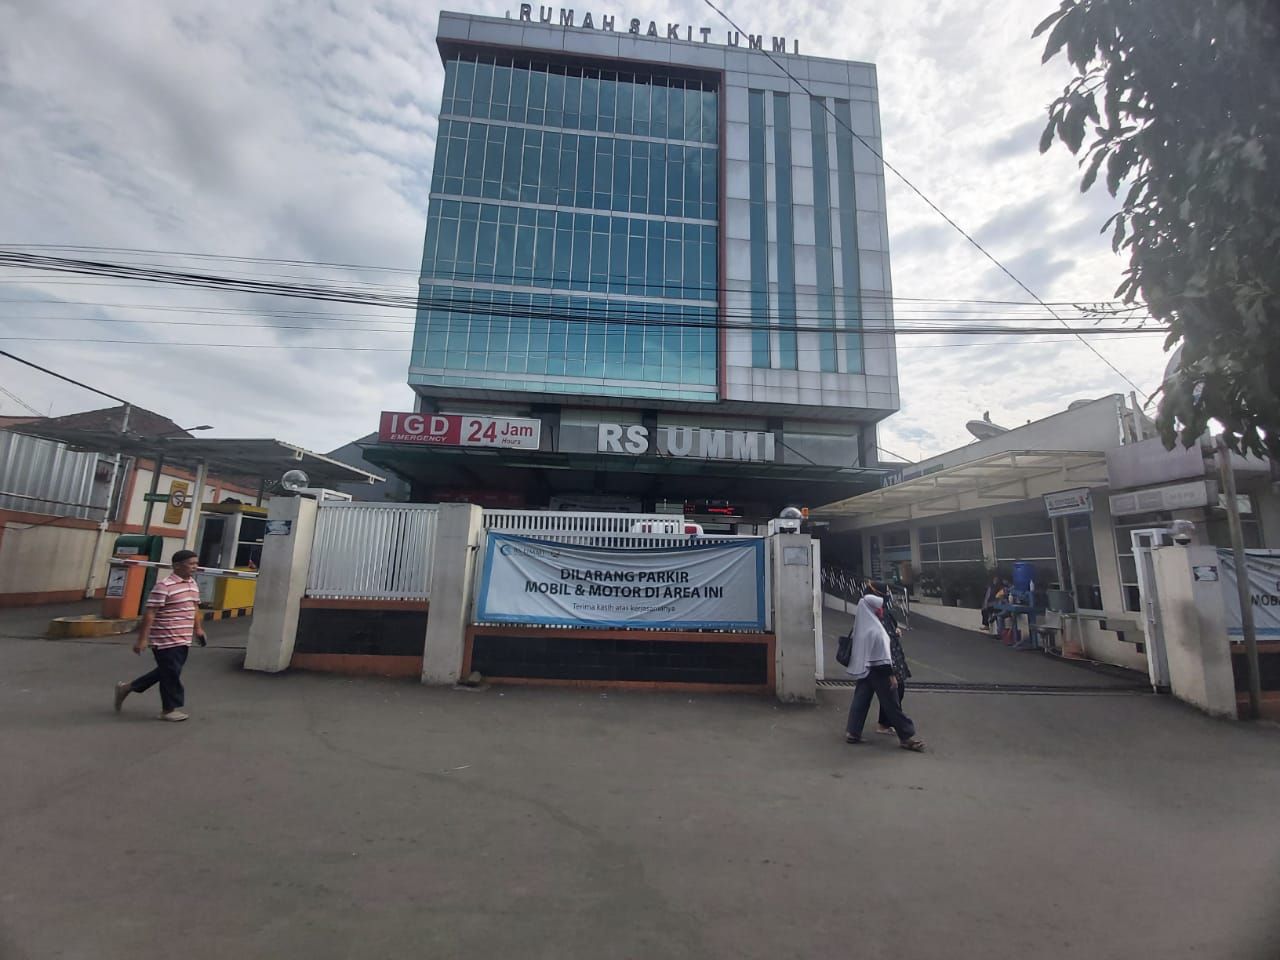 Rumah Sakit UMMI Bogor